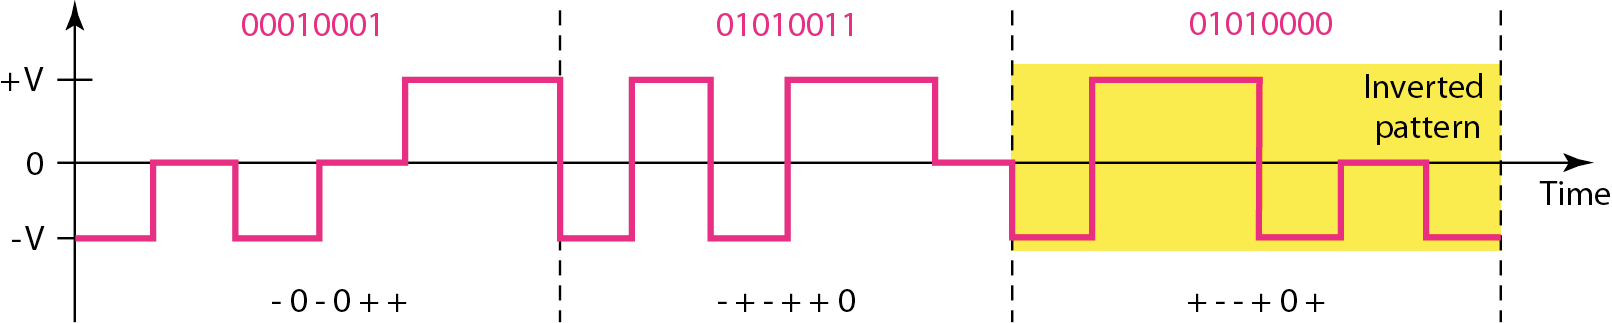 Víceúrovňová kódovací schémata, 8B6T 14 8B6T, používá LAN typu 100Base-T4 blok osmi bitů se kóduje do 6 tříhodnotových signálů redundance (2 8 vs.